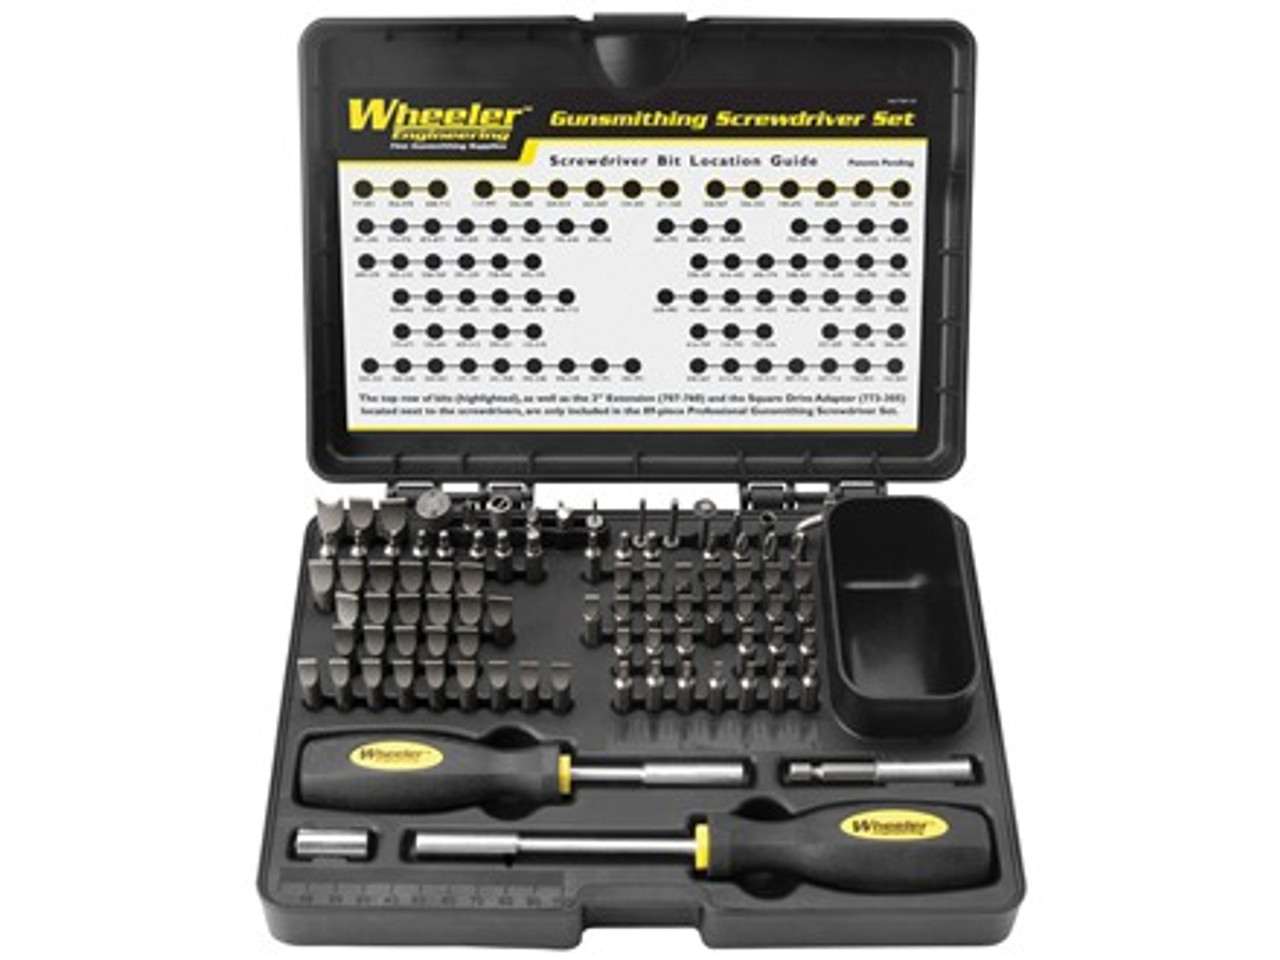 Wheeler 89-Piece Professional-Plus Gunsmithing Screwdriver Set